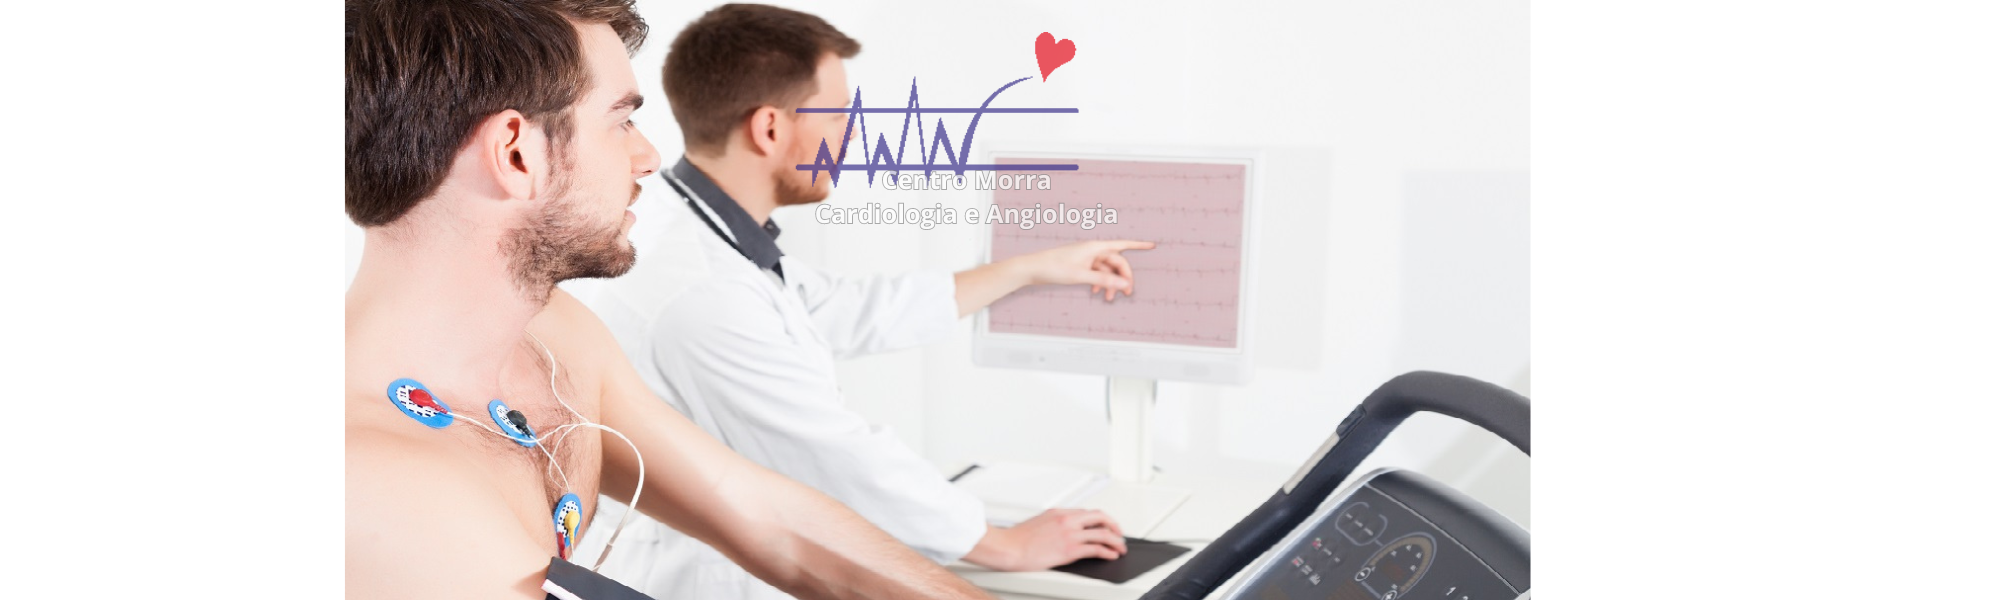 ecg-holter-prova-da-sforzo-elettrocardiogramma-pomigliano-napoli-cardiologia-centro-morra